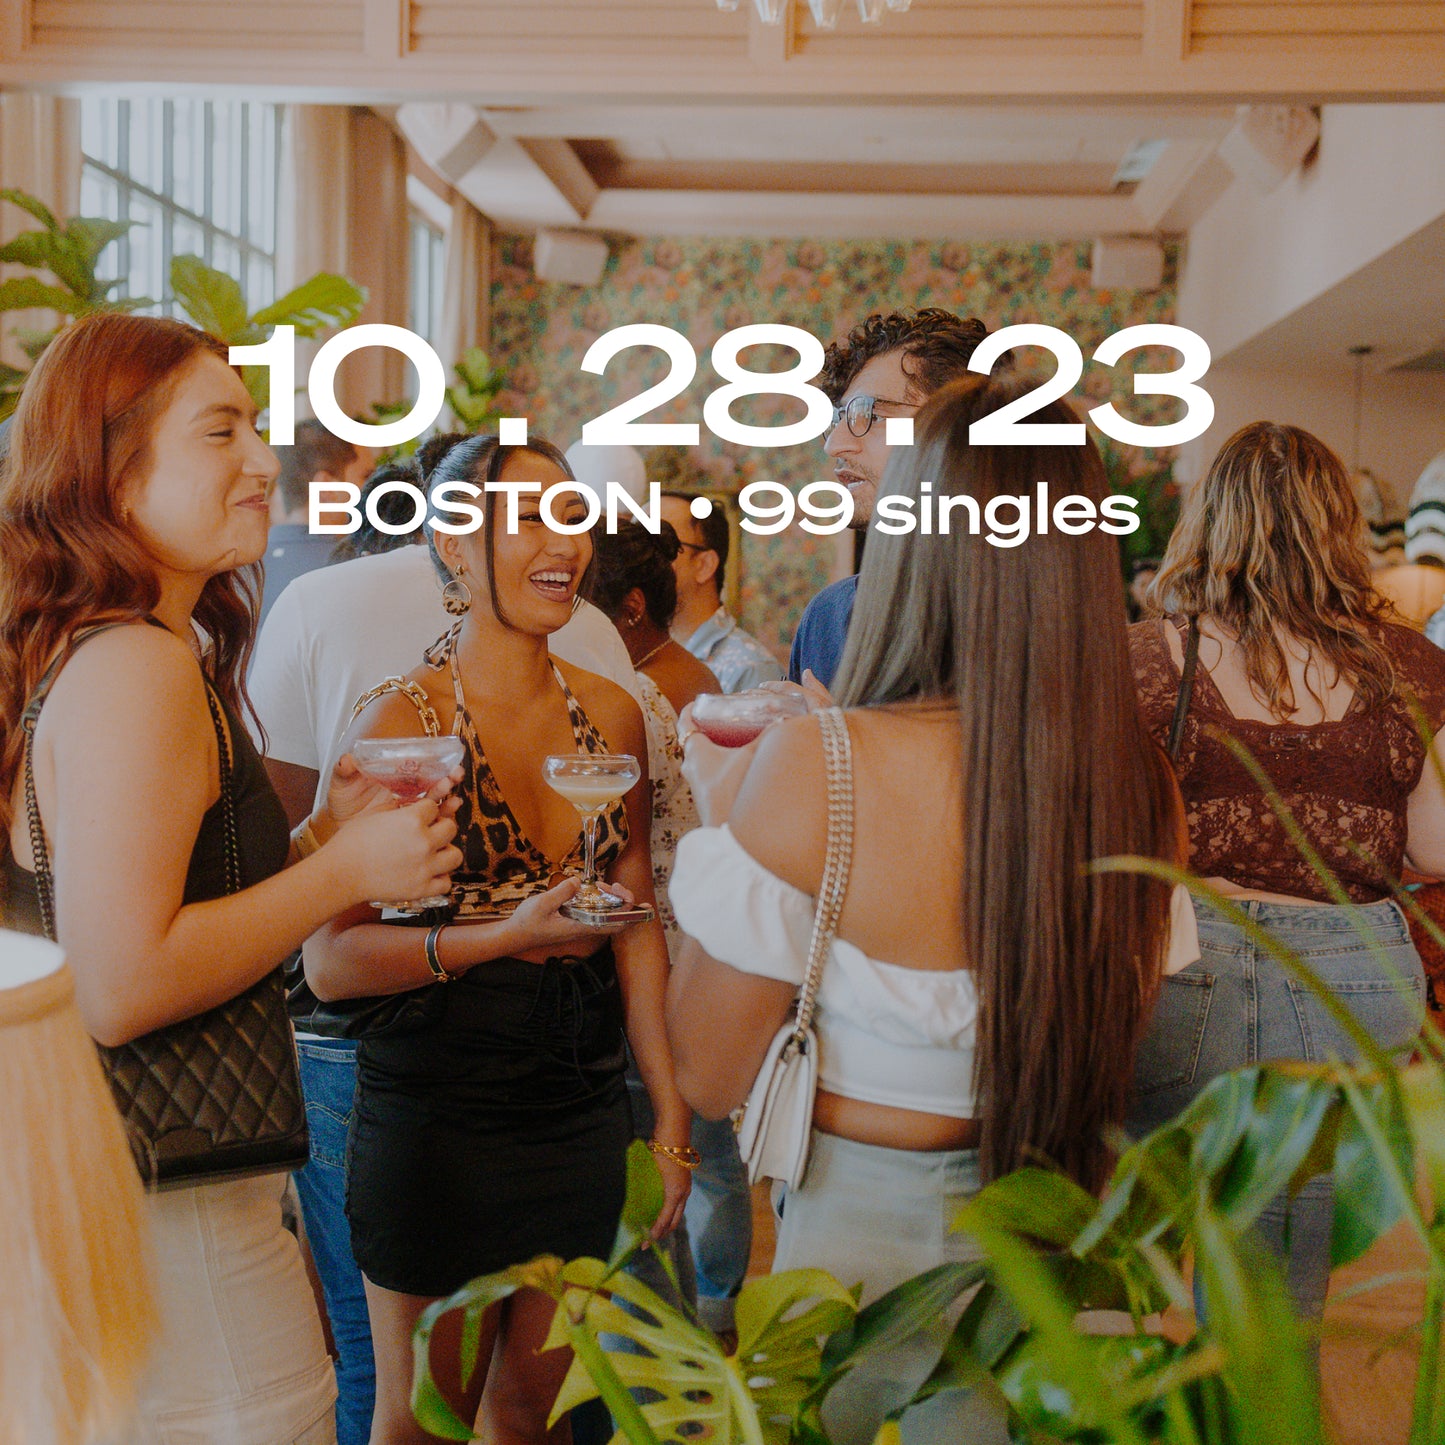 BOSTON: Singles Happy Hour